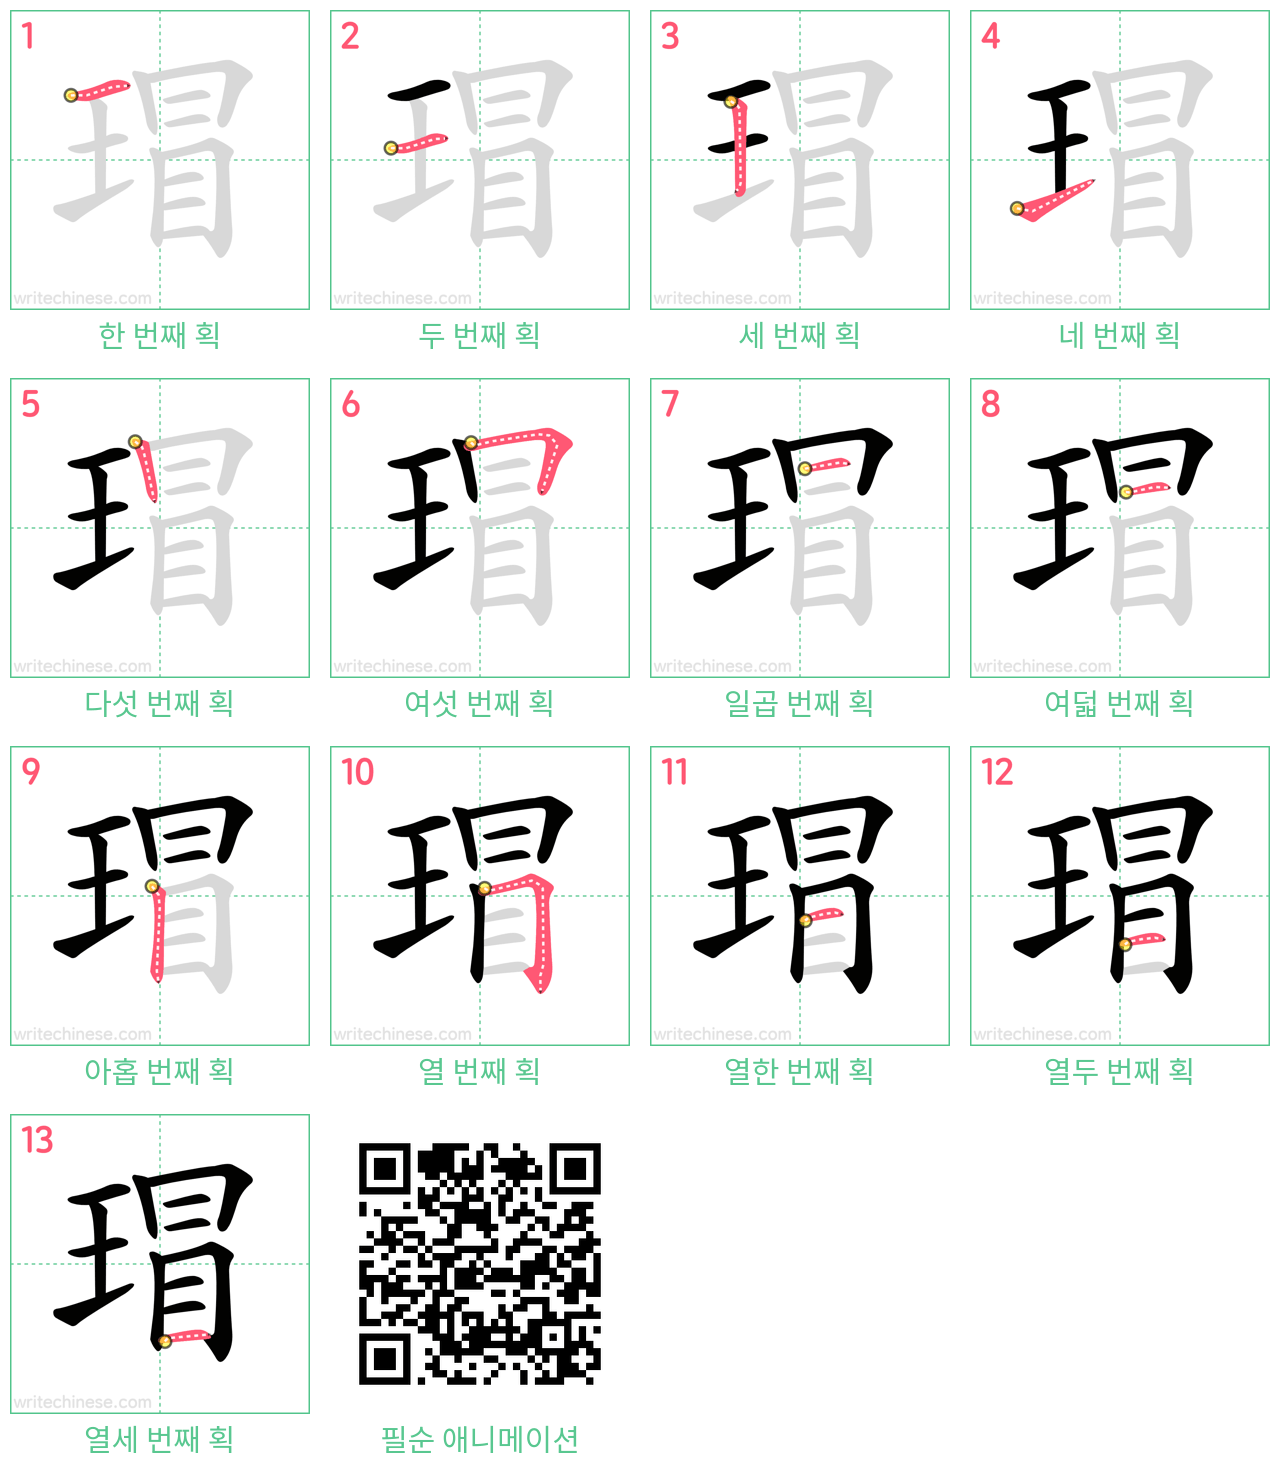 瑁 step-by-step stroke order diagrams